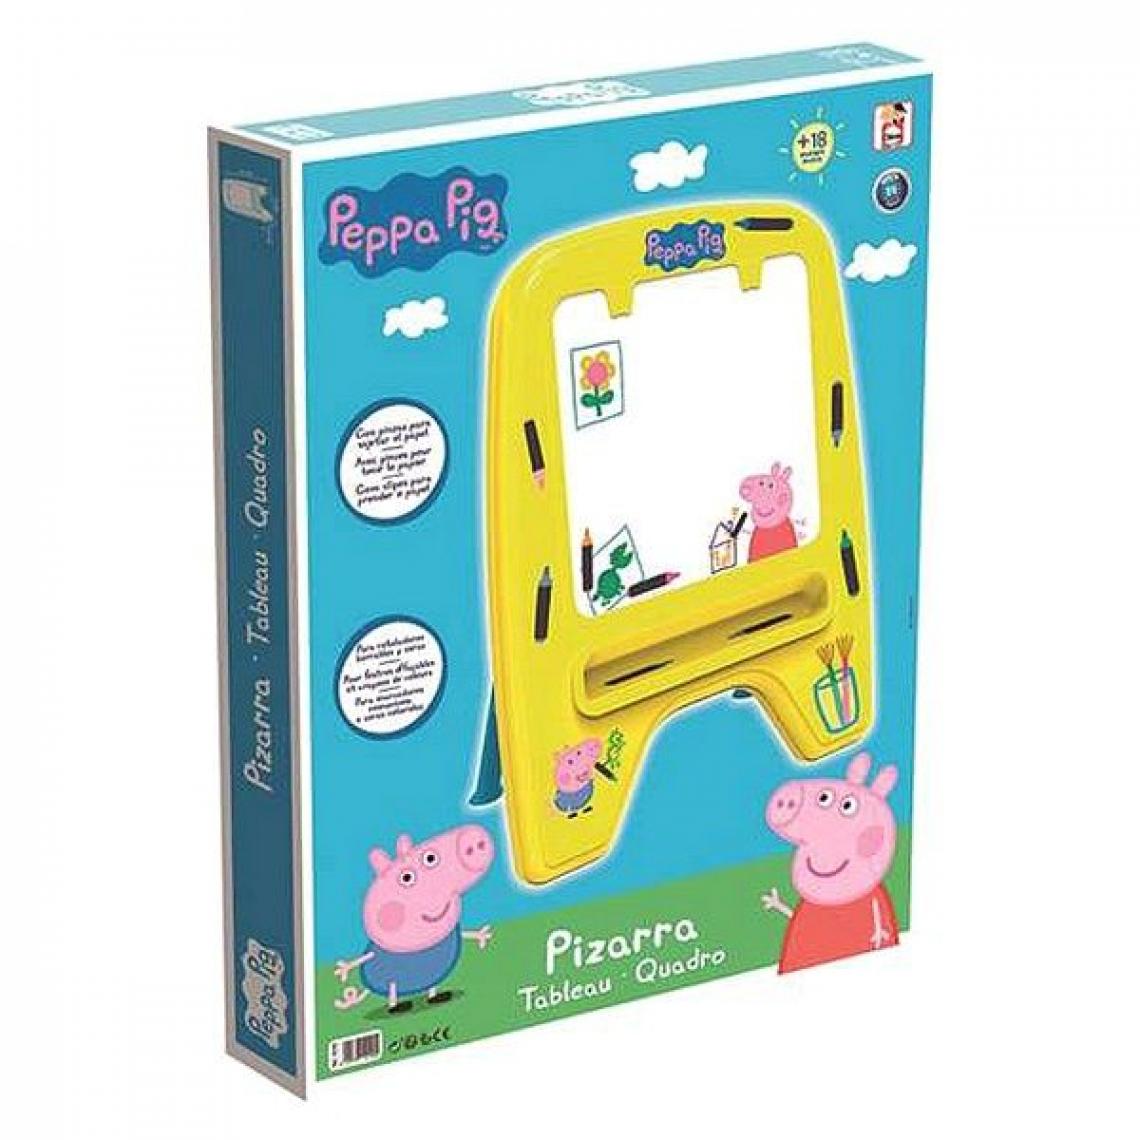 Fun - Tableau magique Peppa Pig (59 x 33 x 75 cm) - Jeux de récréation